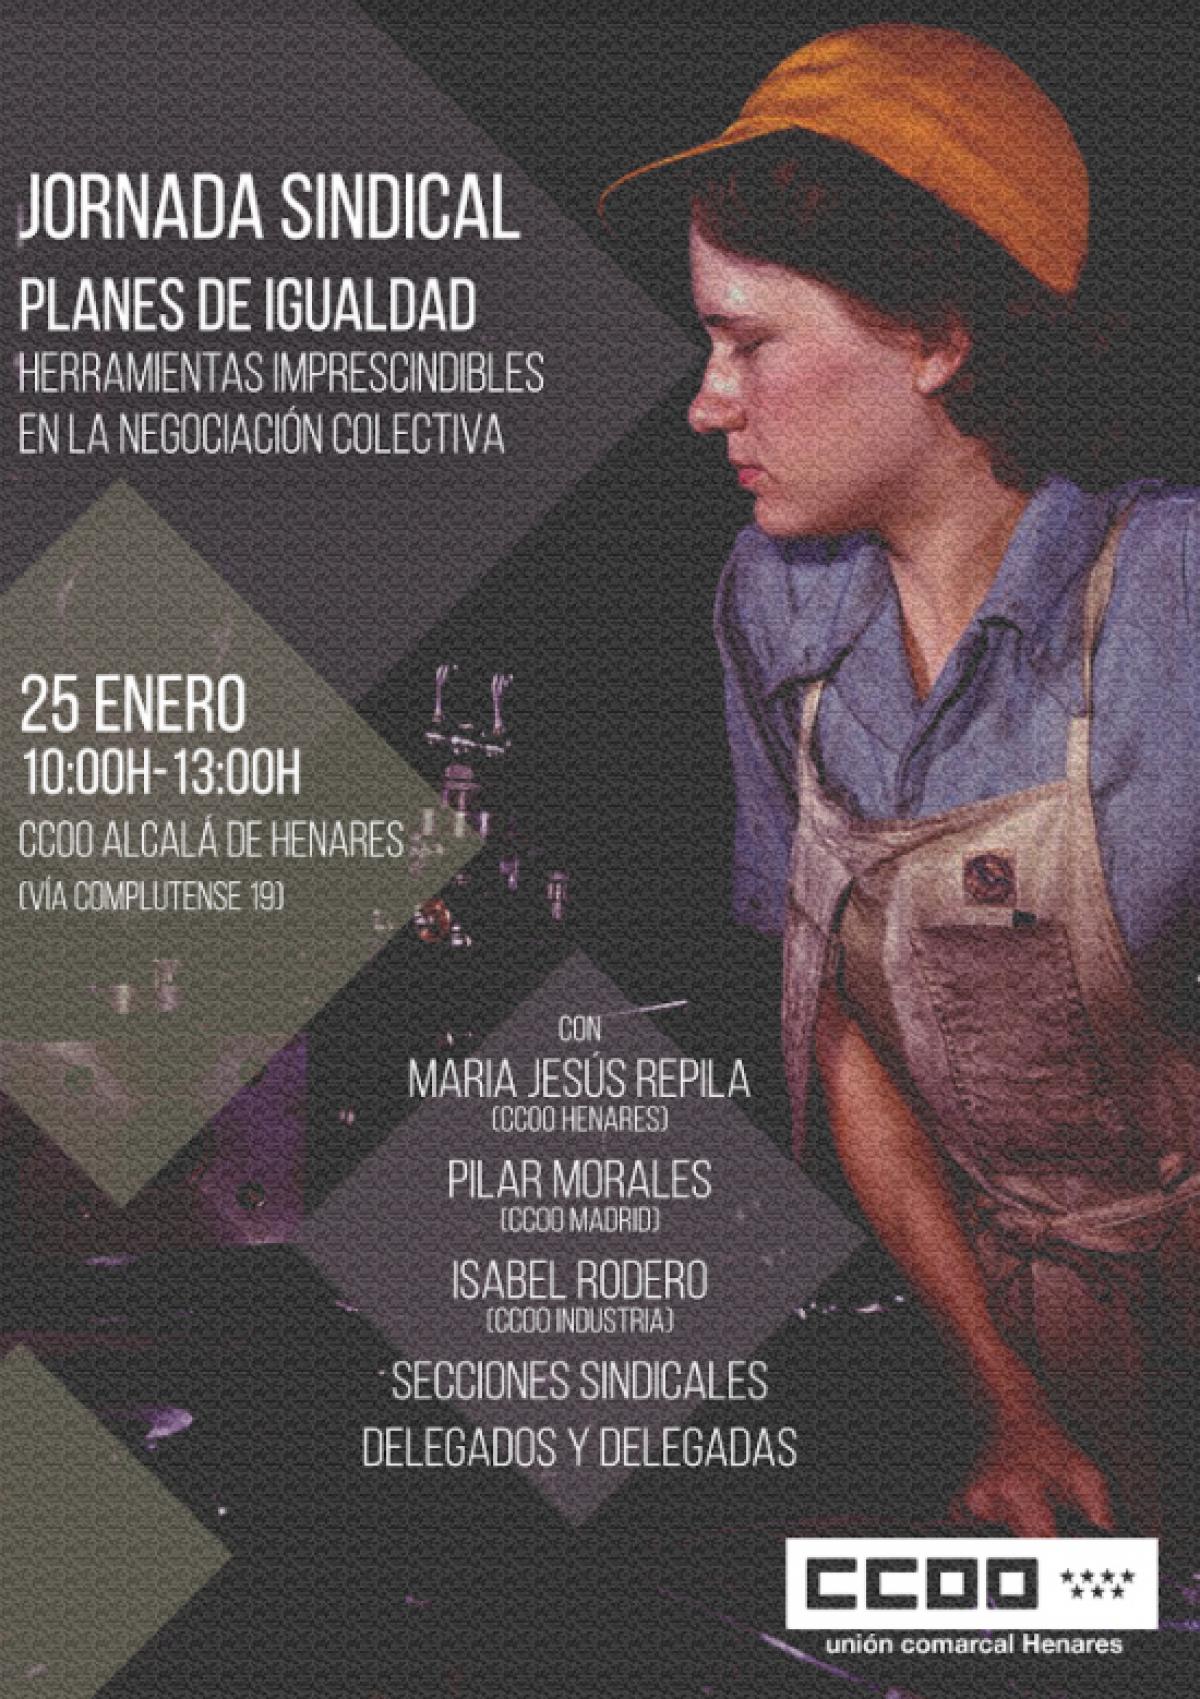 Jornada sindical “Planes de Igualdad: herramientas imprescindibles en la negociación colectiva”, en Alcalá de Henares